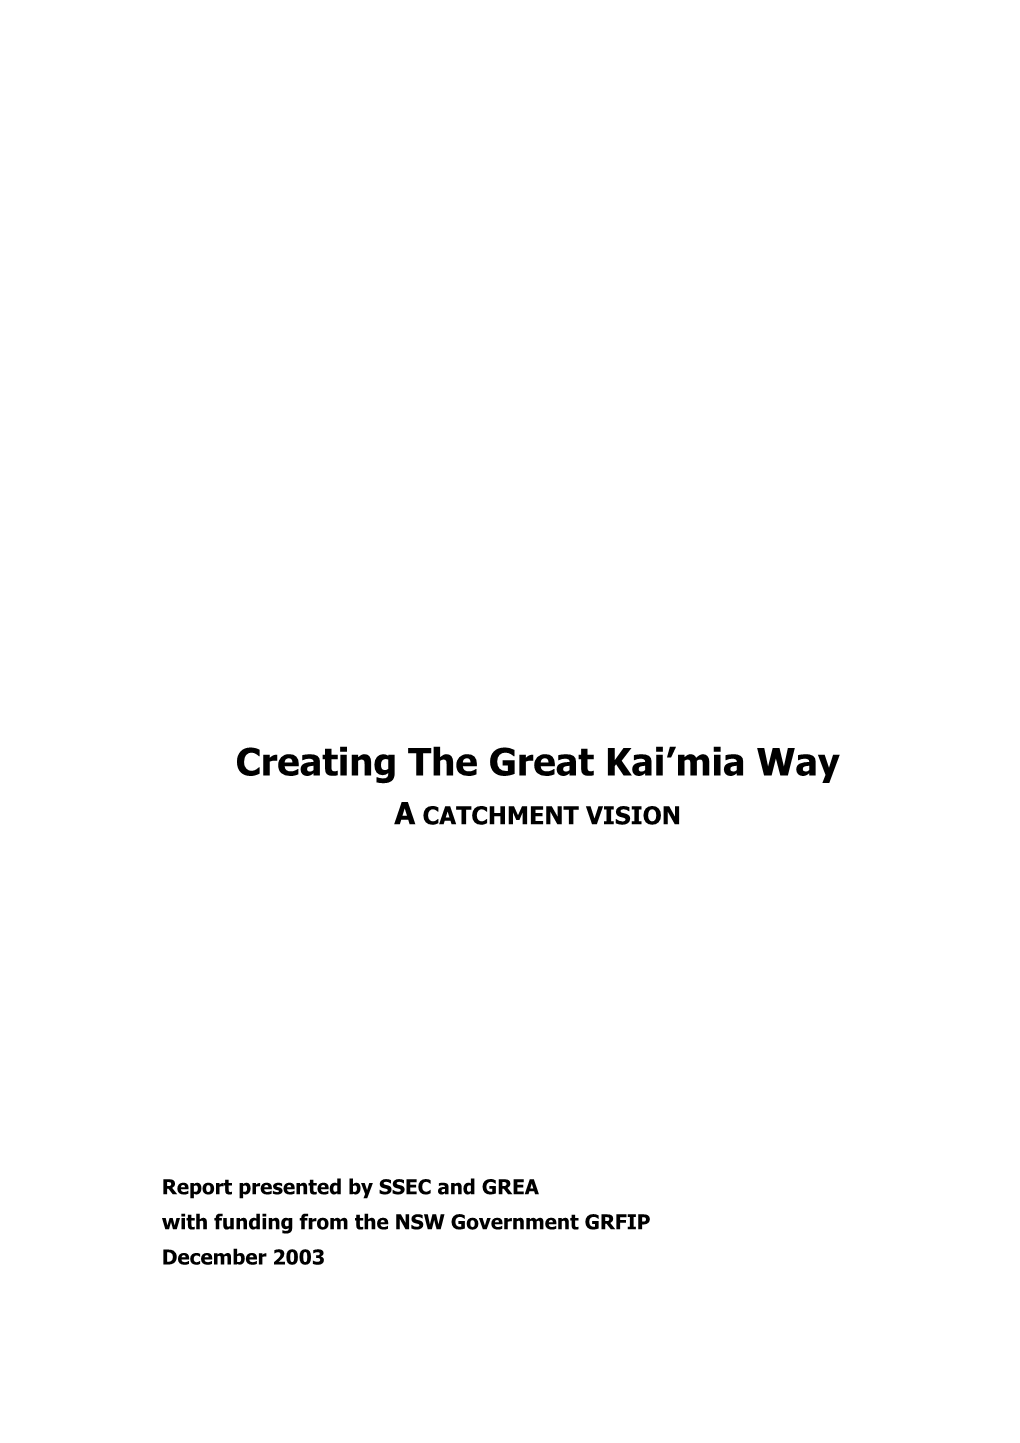 Creating the Great Kai'mia